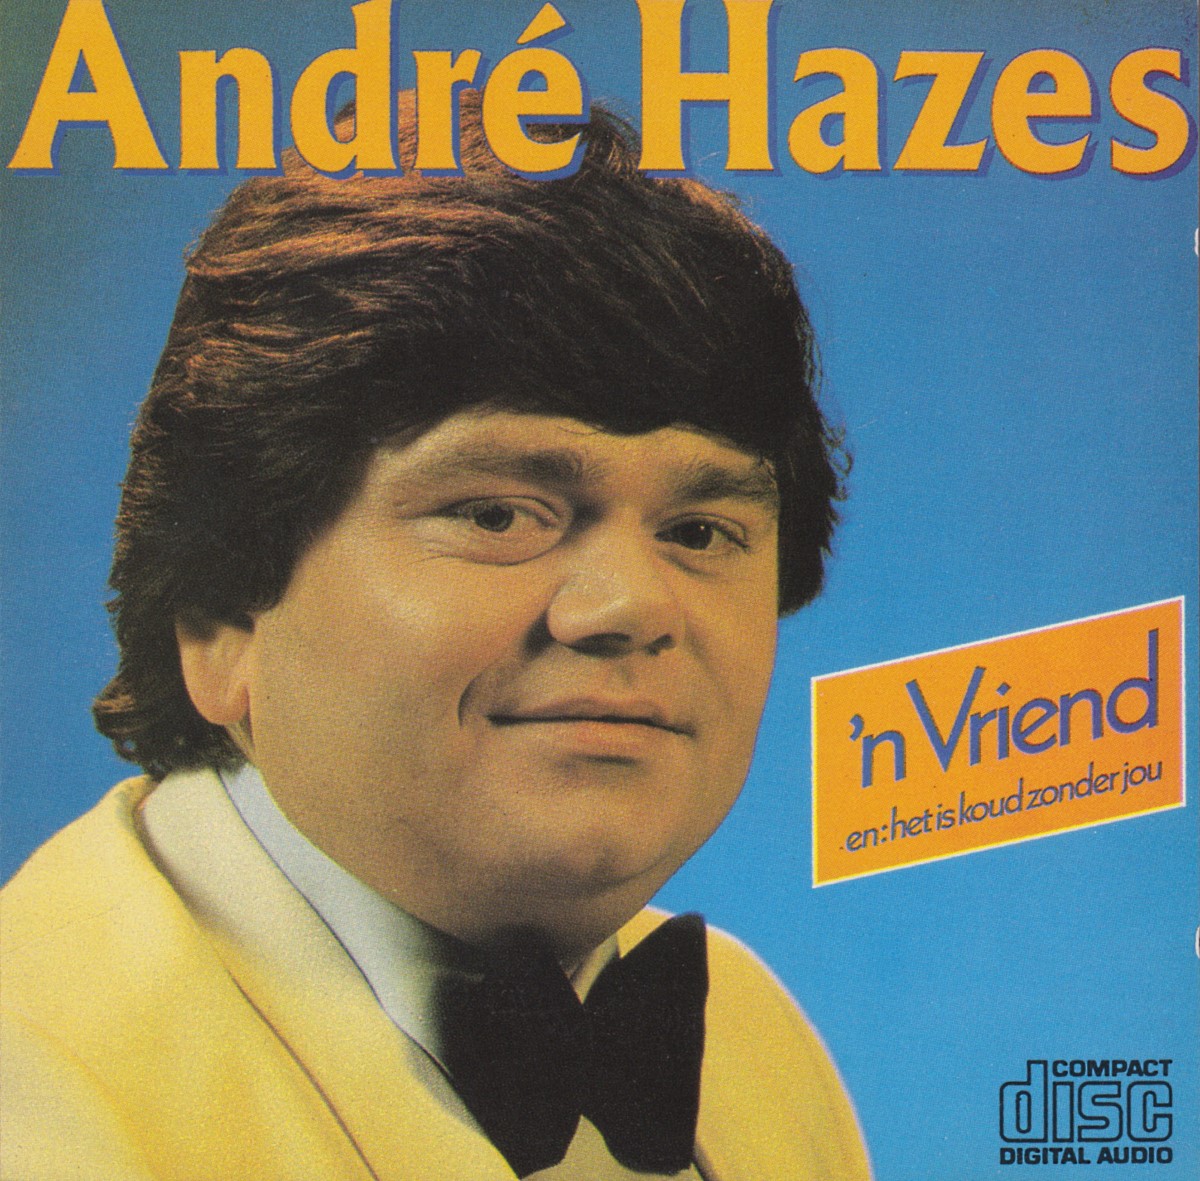 André Hazes - 'n Vriend (1980)